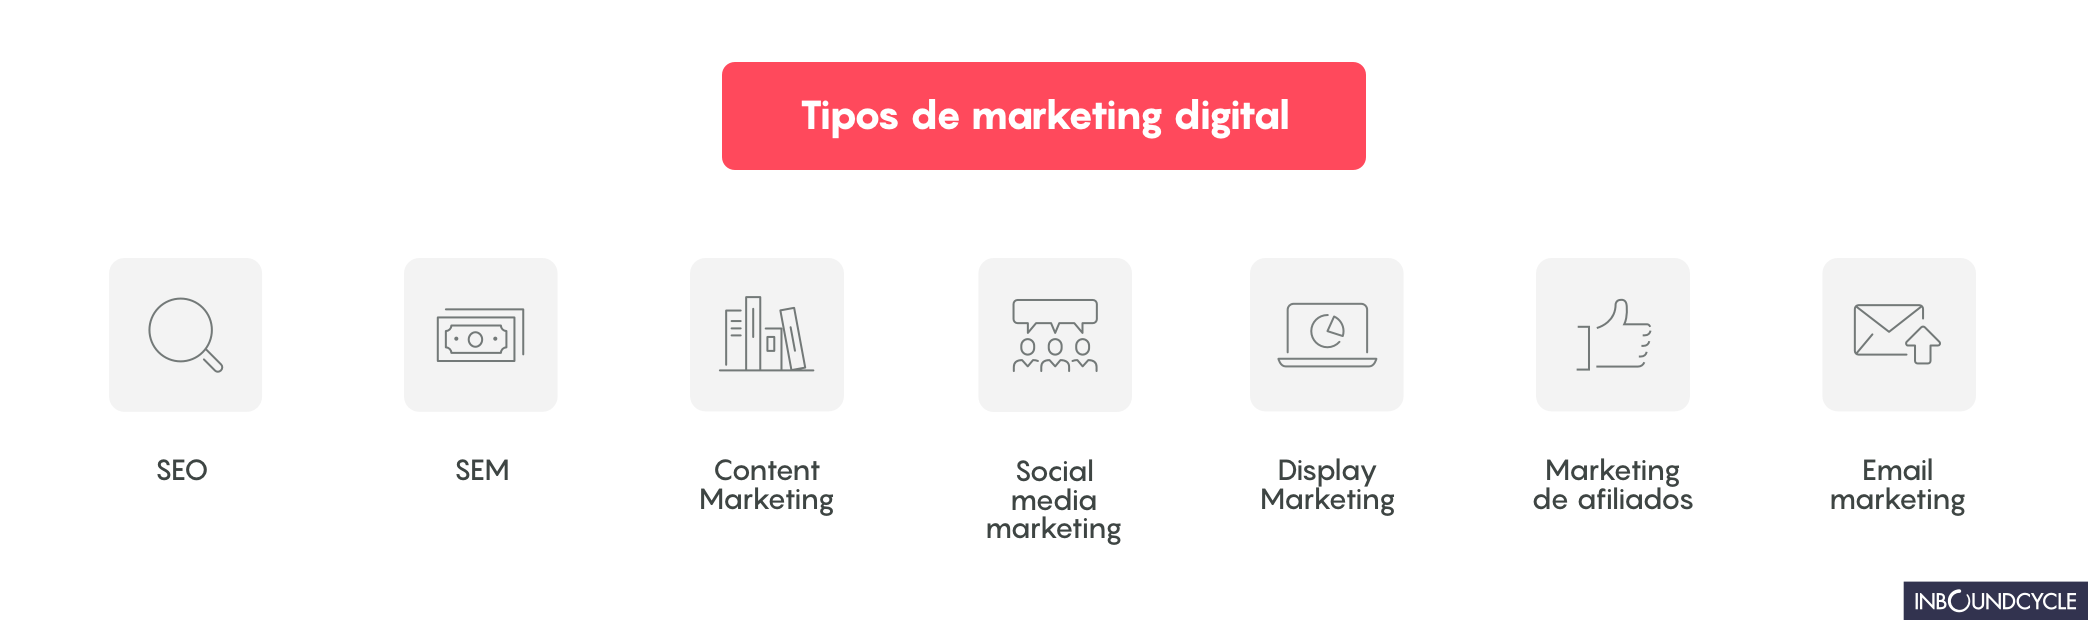 Tipos_de_marketing_digital